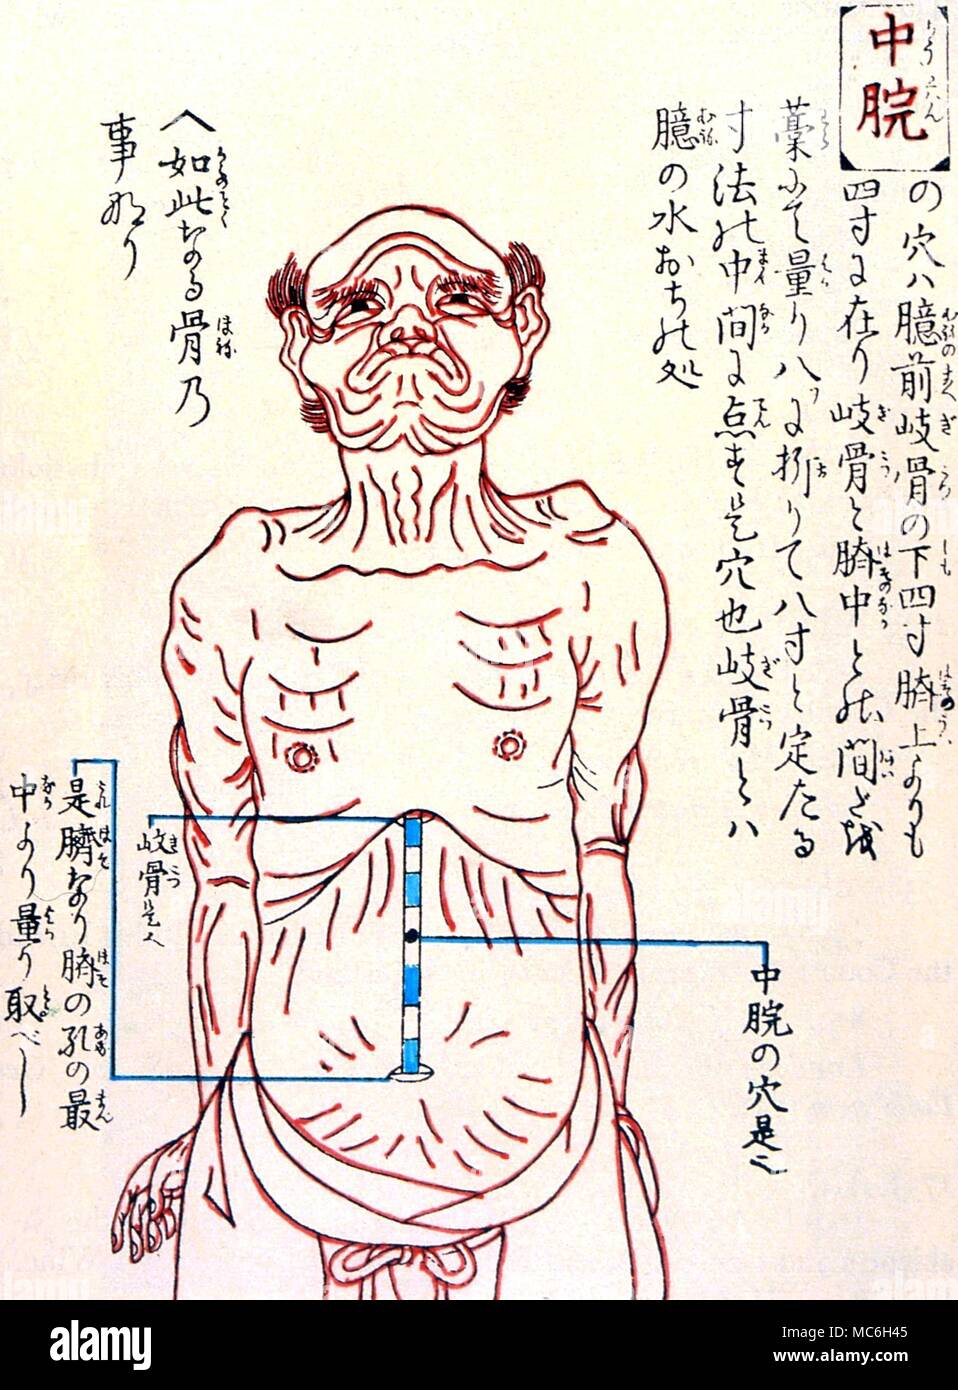 Acupuncture - acuponcture chinoise graphique, à partir d'une gravure sur bois de 1730 Banque D'Images